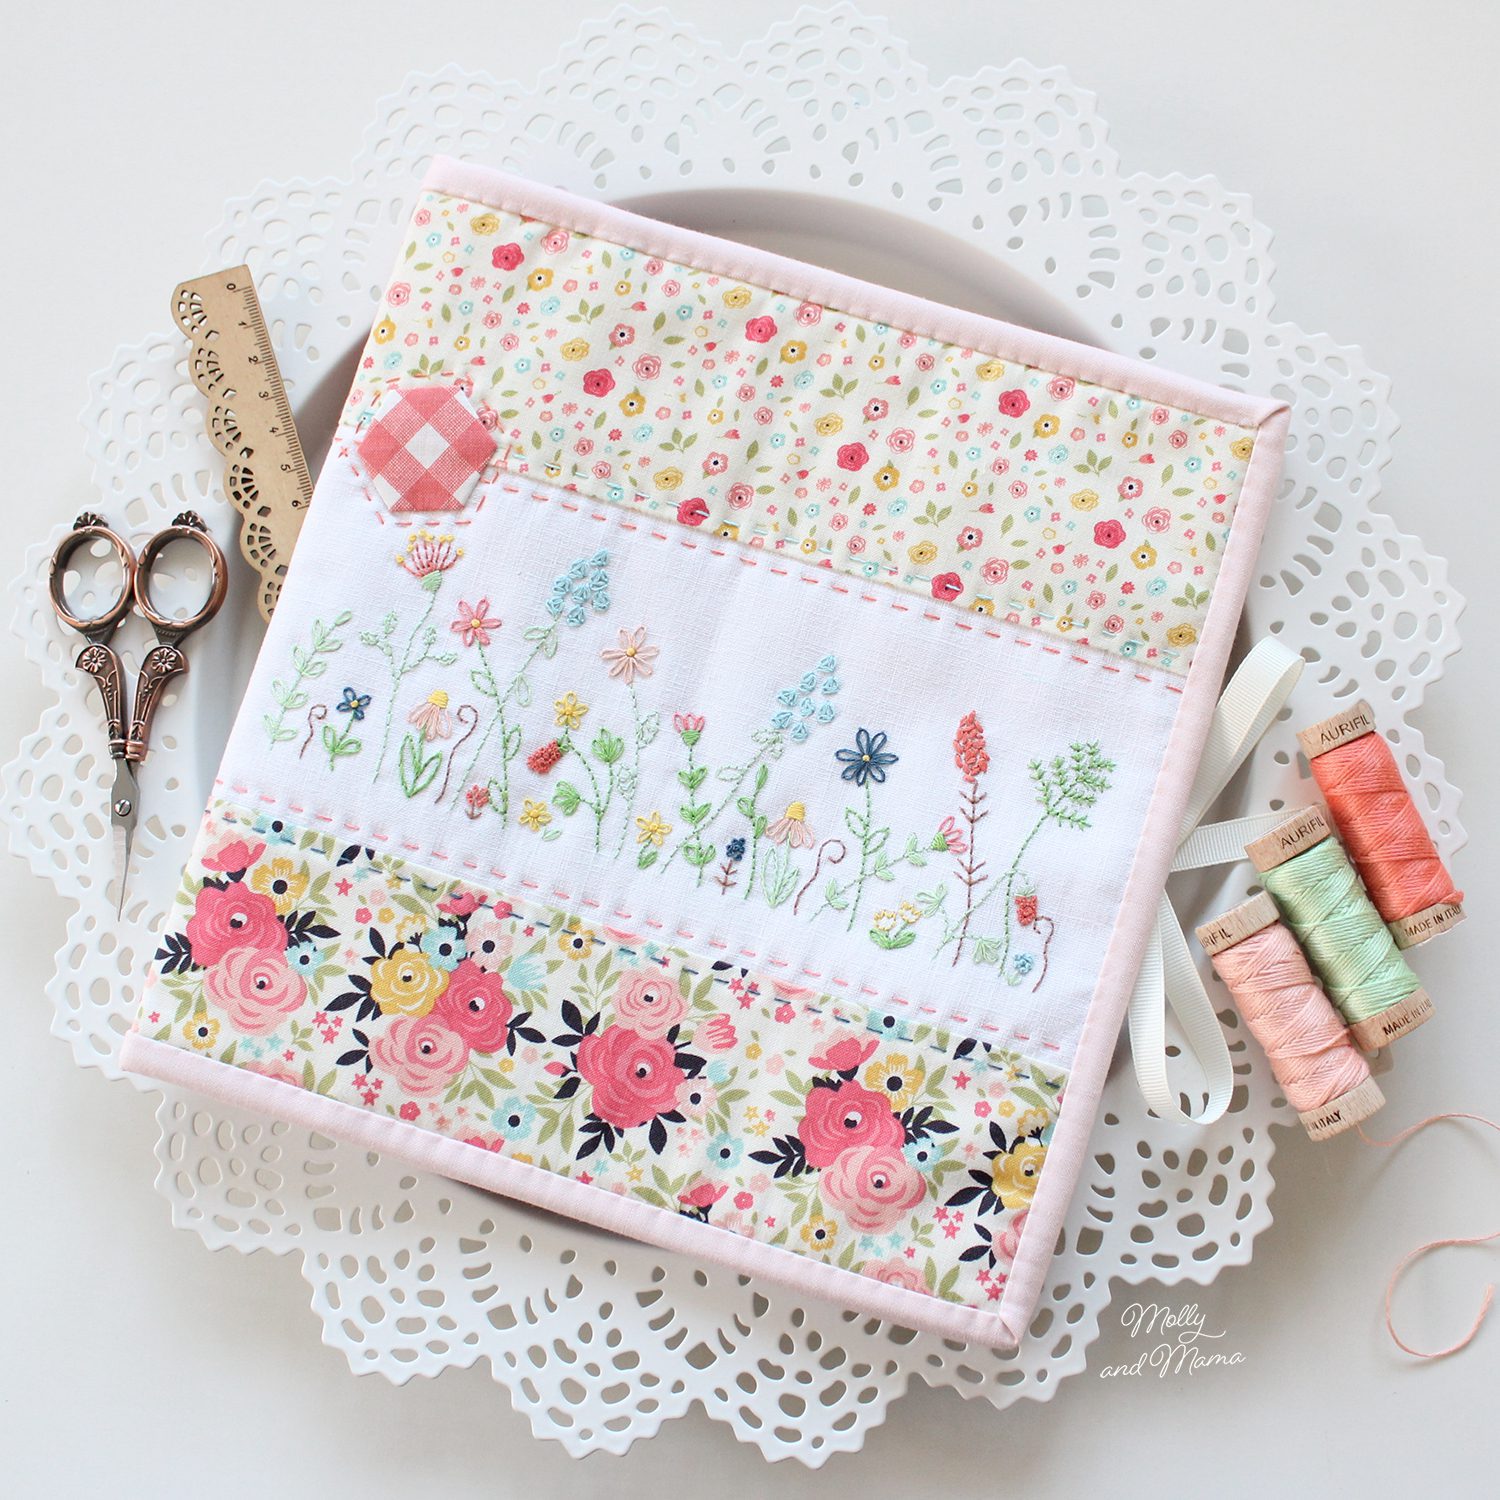 A Simple Sewing Folder in Cute Camper Fabric